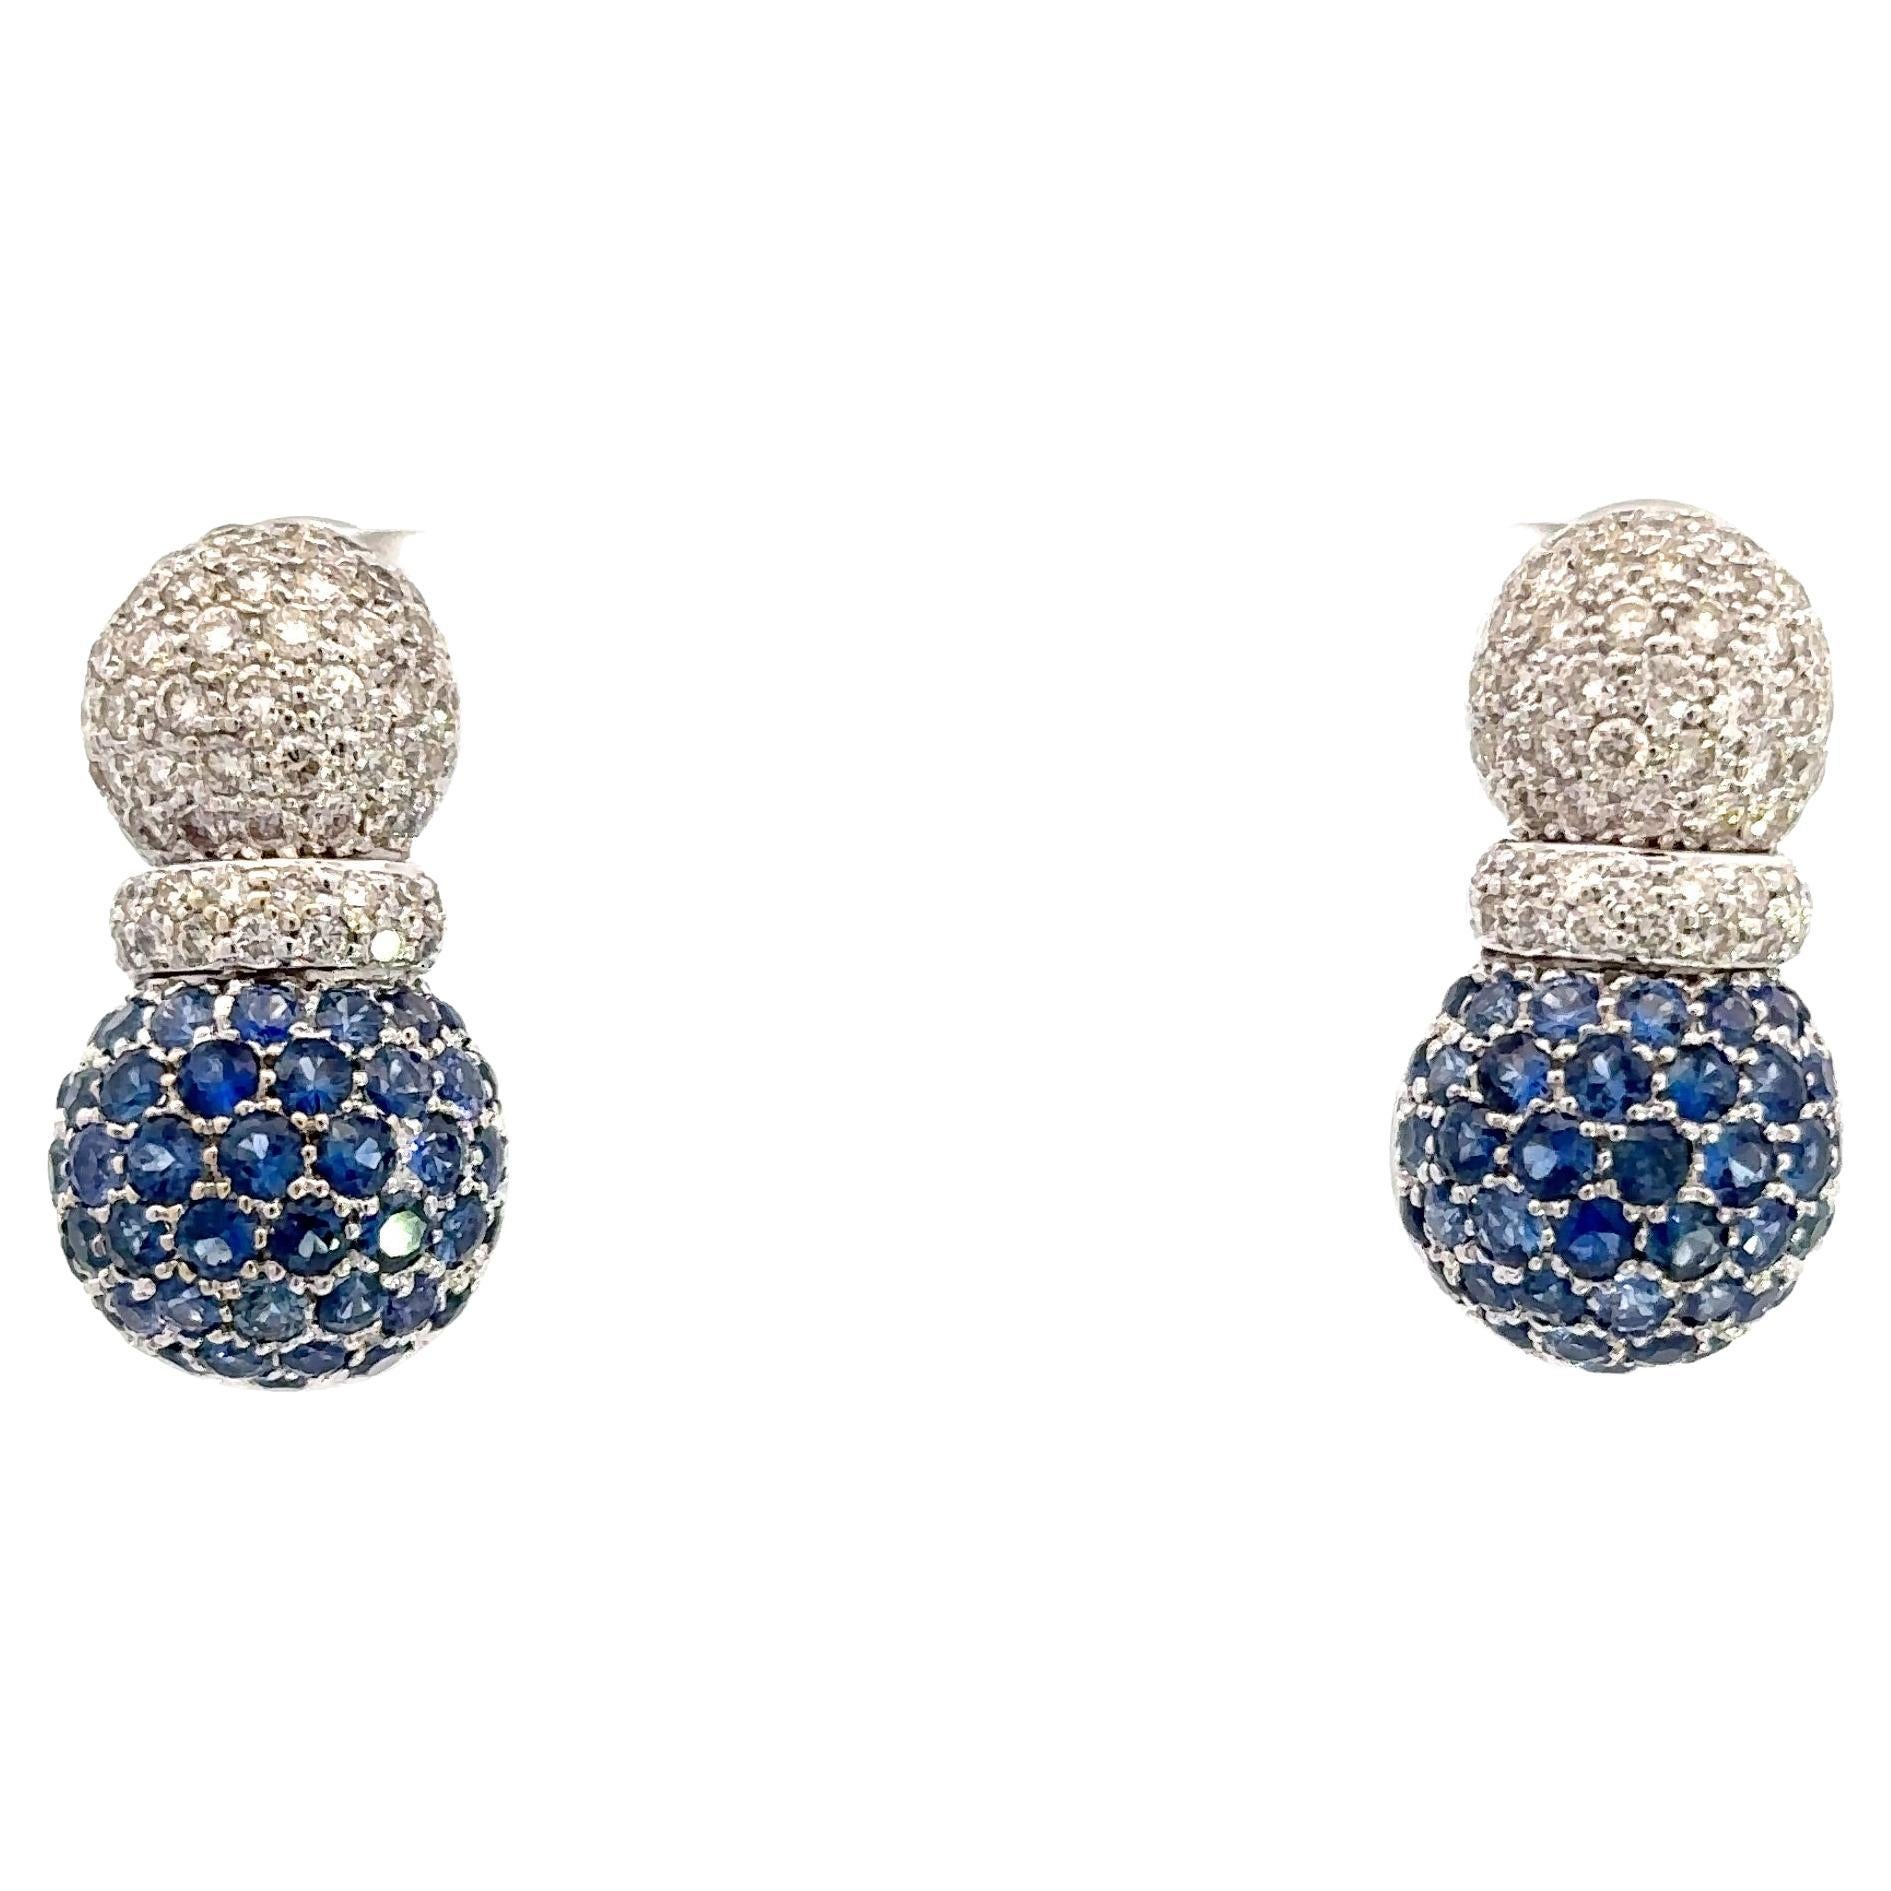 Natural Blue Sapphire & White Diamond, Pineapple Earrings in 18 Karat White Gold